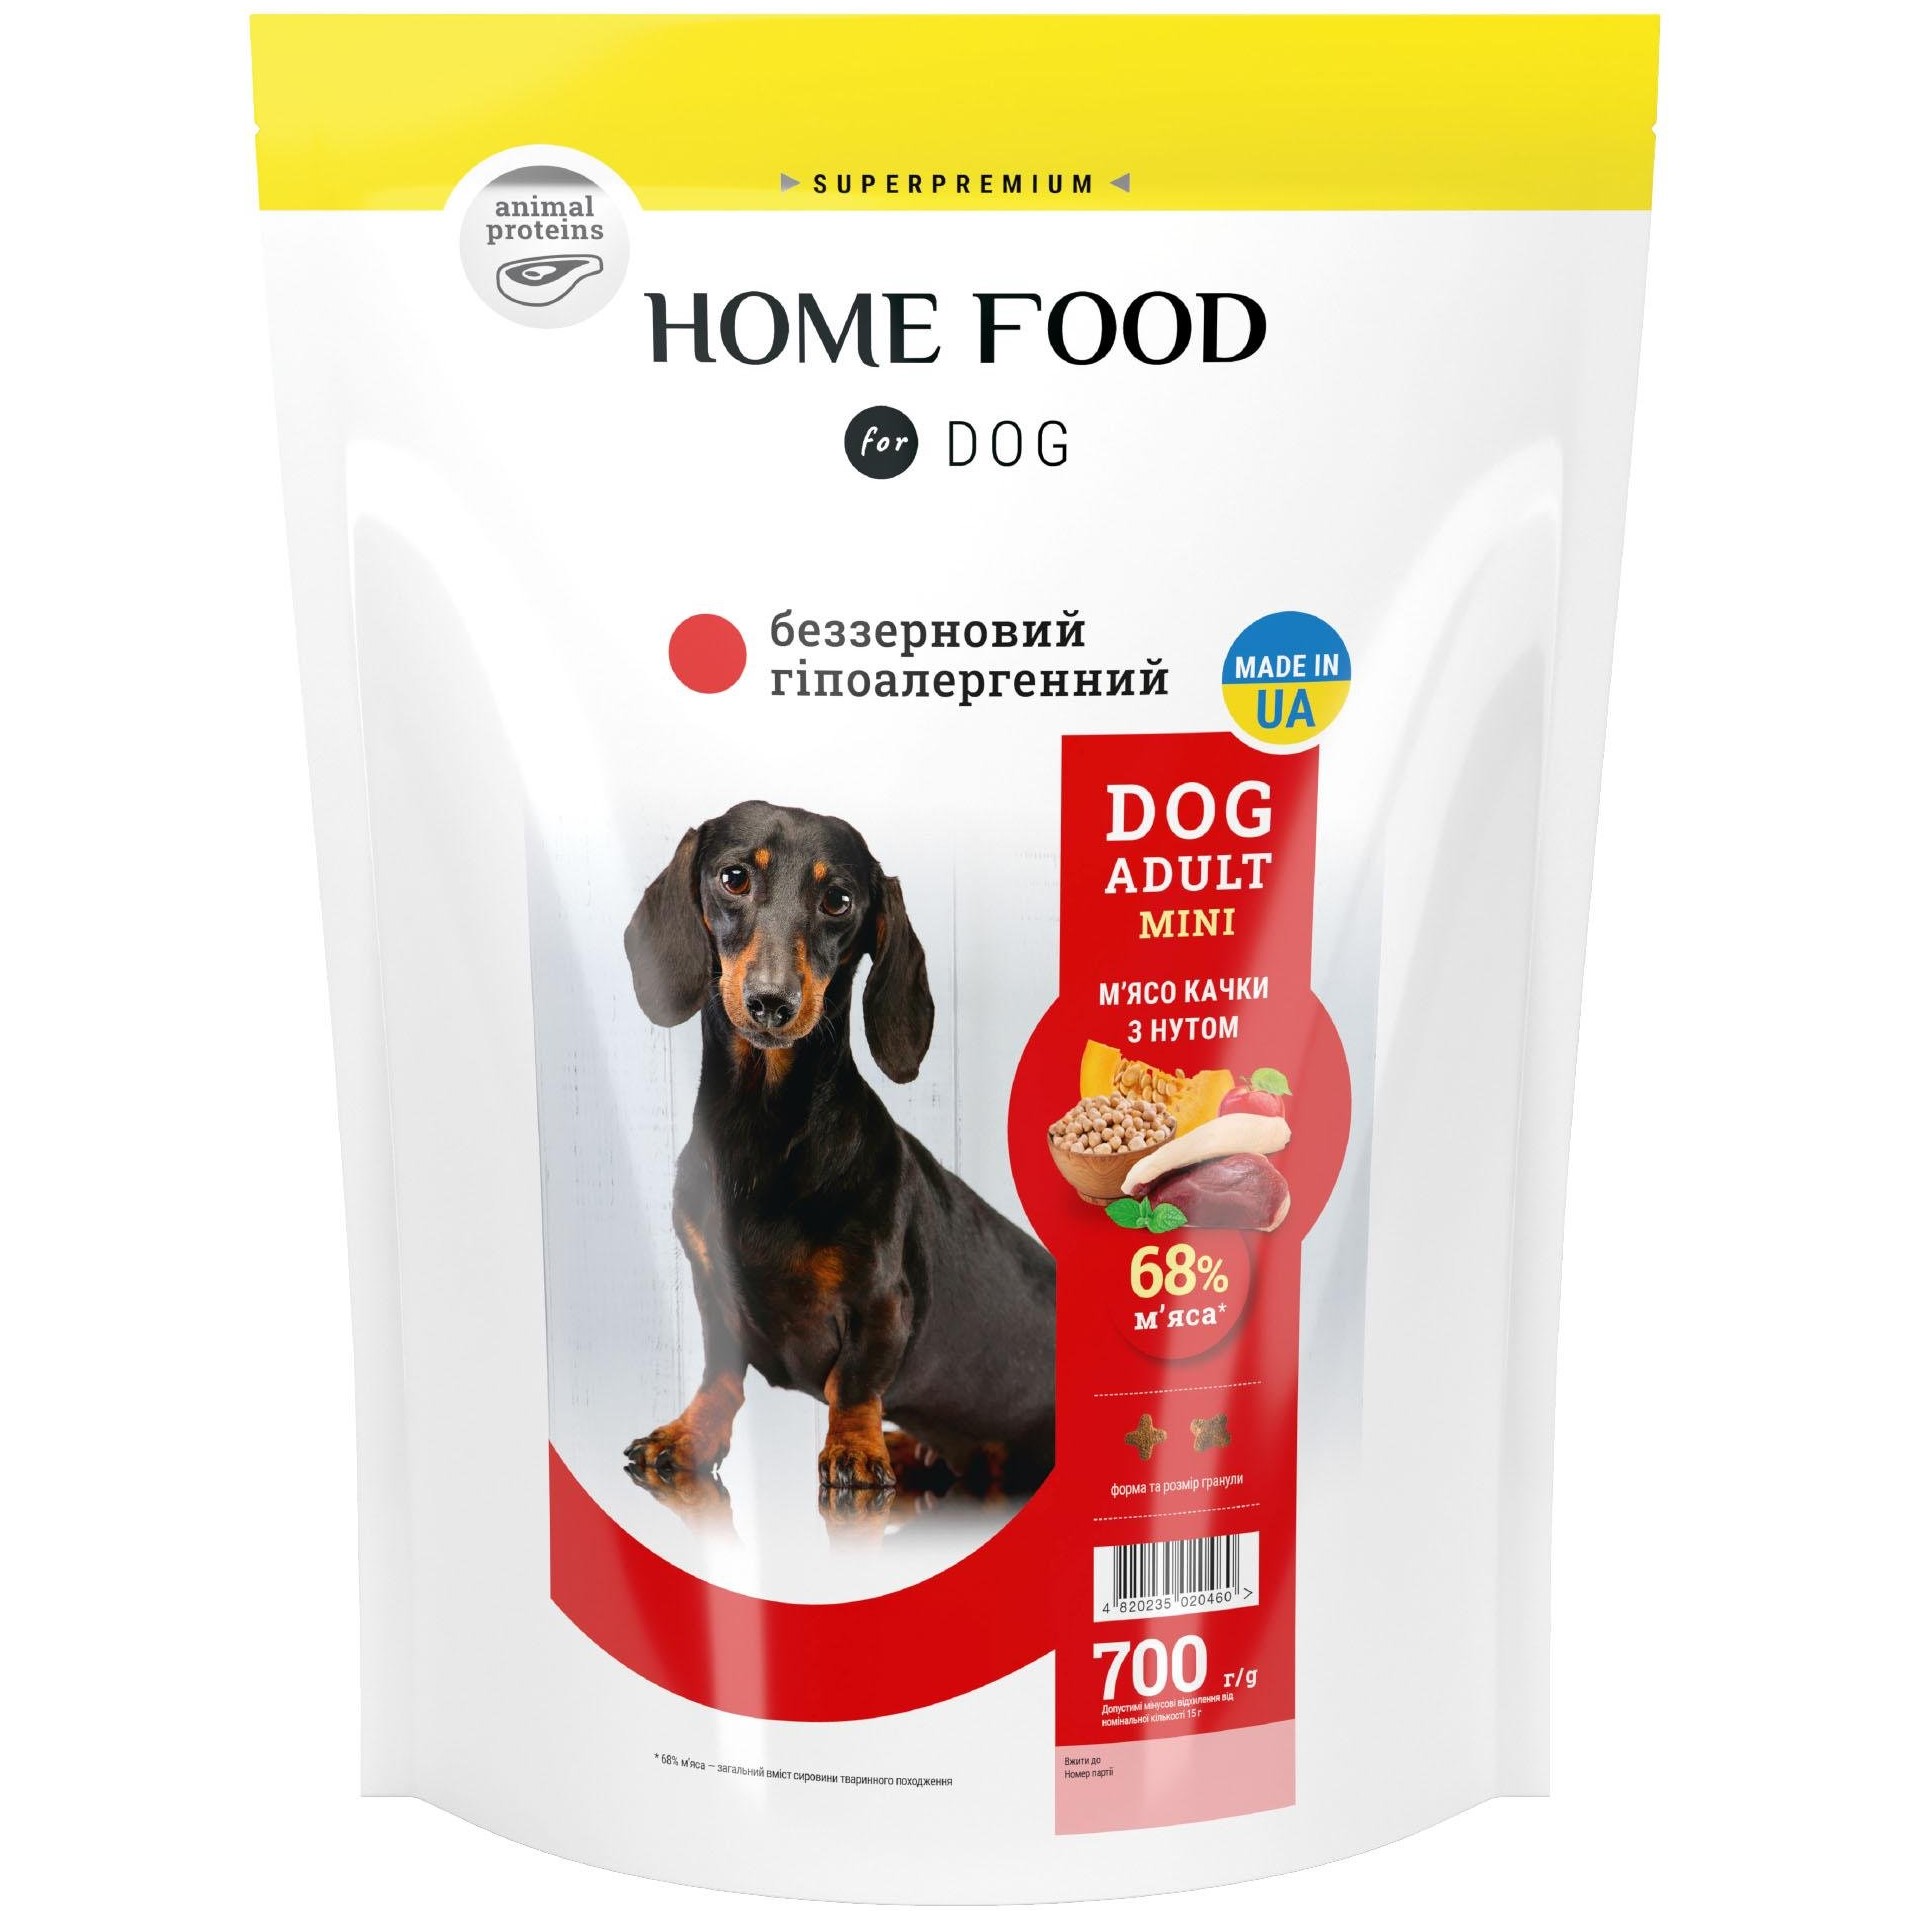 Беззерновой гипоаллергенный сухой корм для взрослых собак малых пород Home Food Dog Adult Mini Мясо утки с нутом 700 г - фото 1